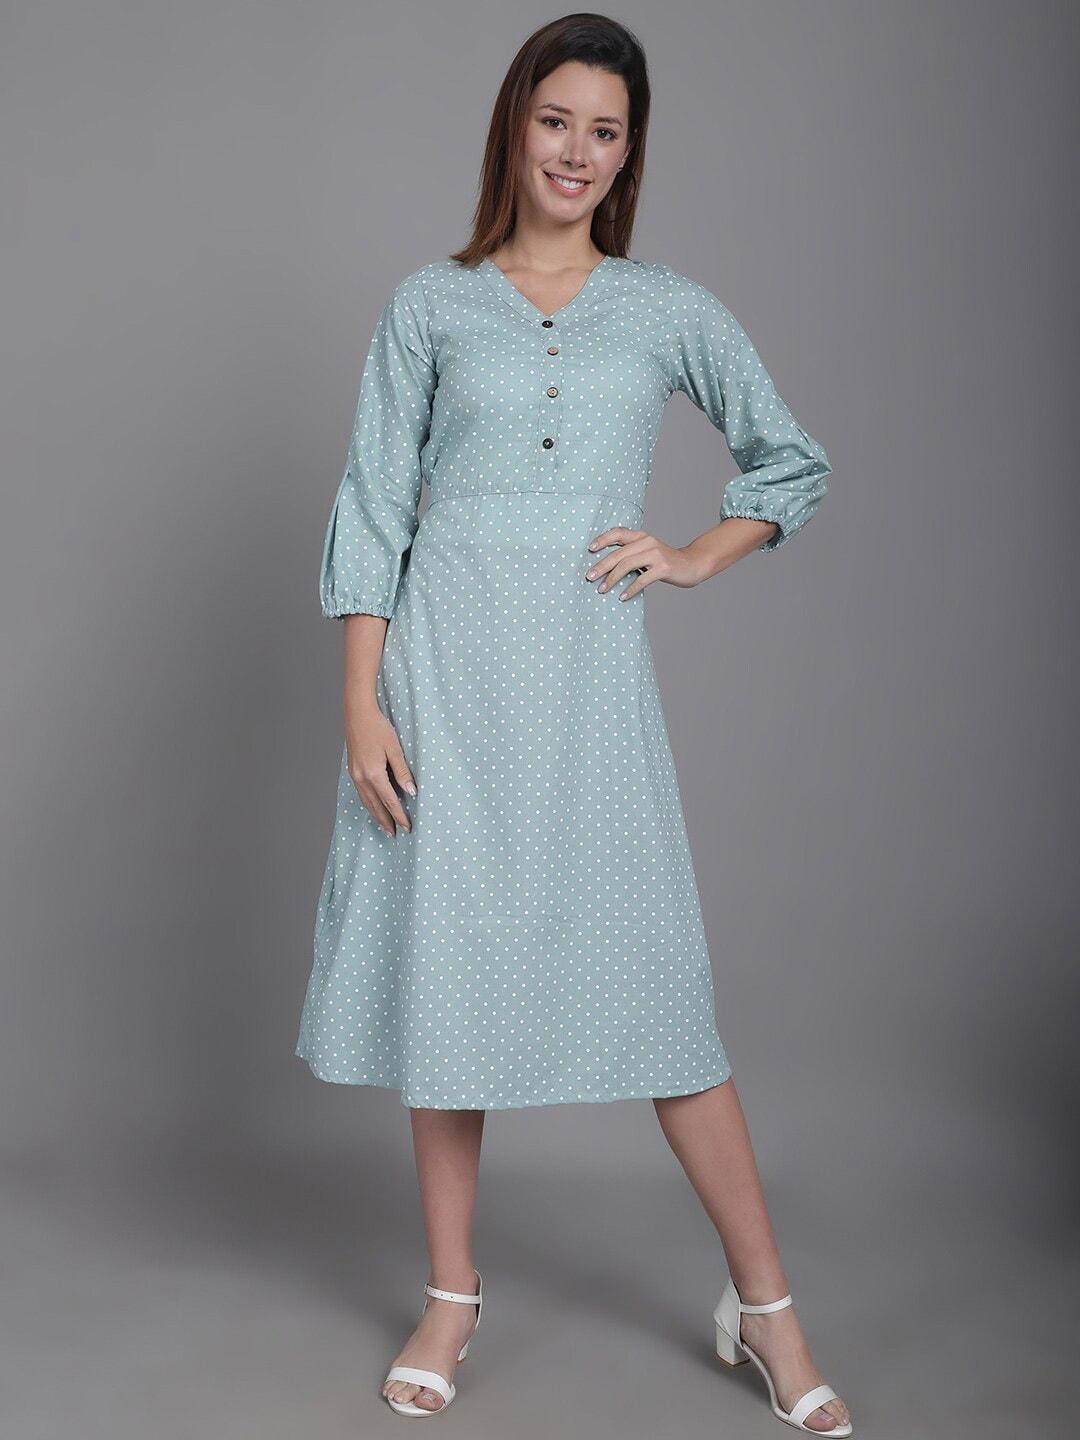 enchanted cotton drapes polka dot print a-line midi dress